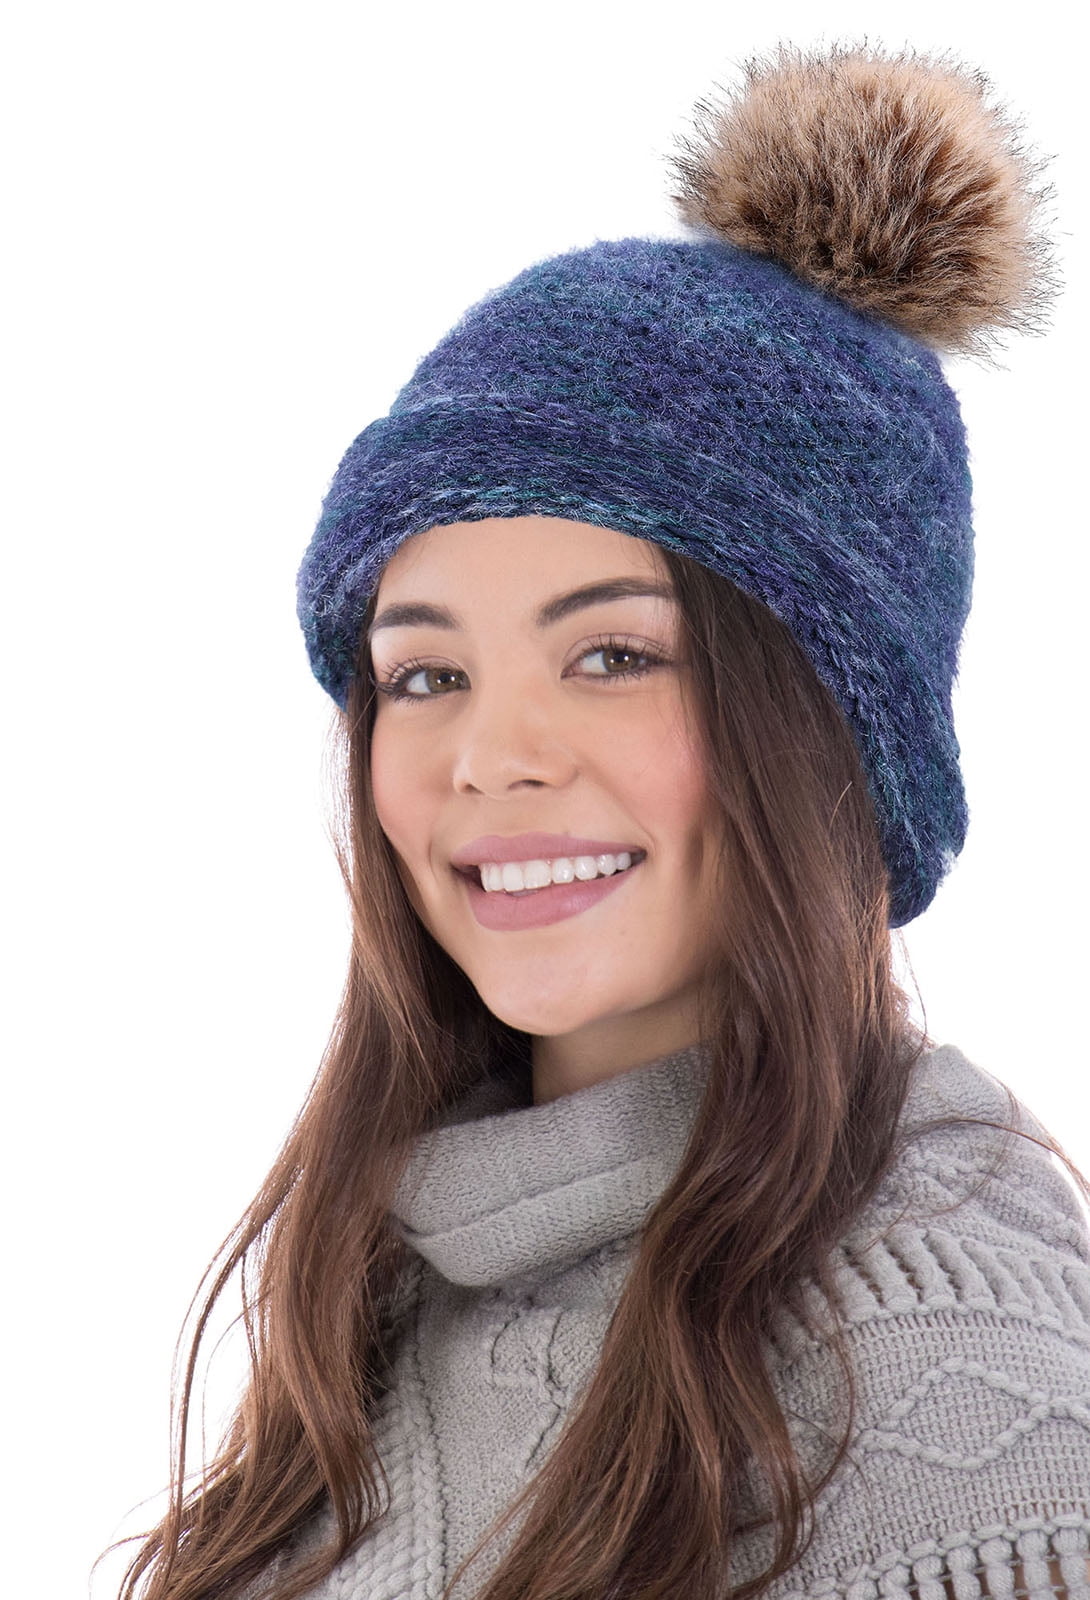 Pom Pom Beanie Knit Slouchy Baggy Winter Warm Hat Ski Cap Skull Fit Man Woman 